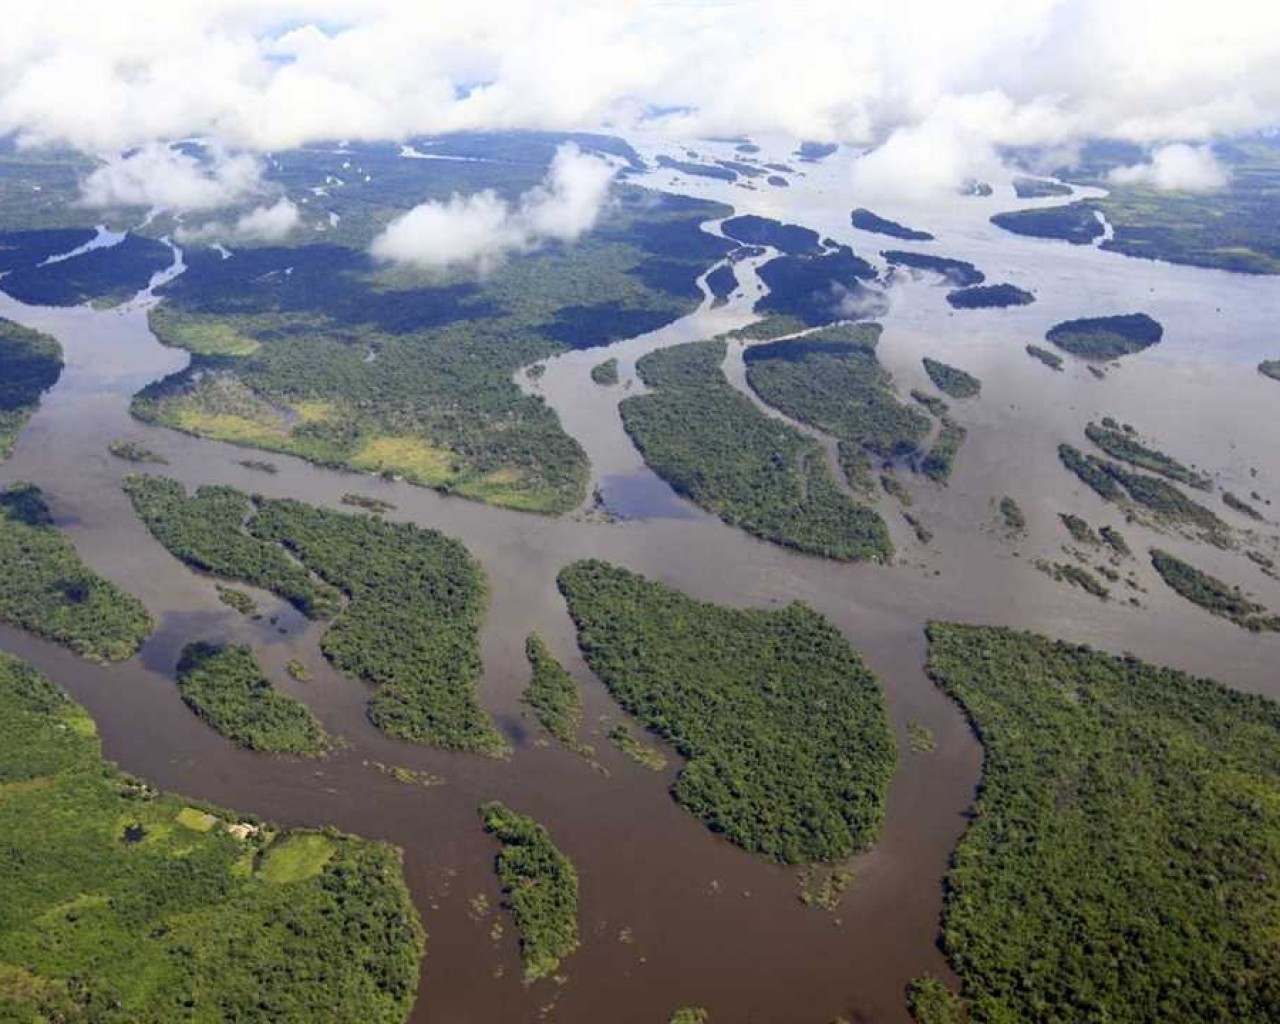 Нил – длиннейшая река на планете, объединяющая жизнь и культуру множества народов